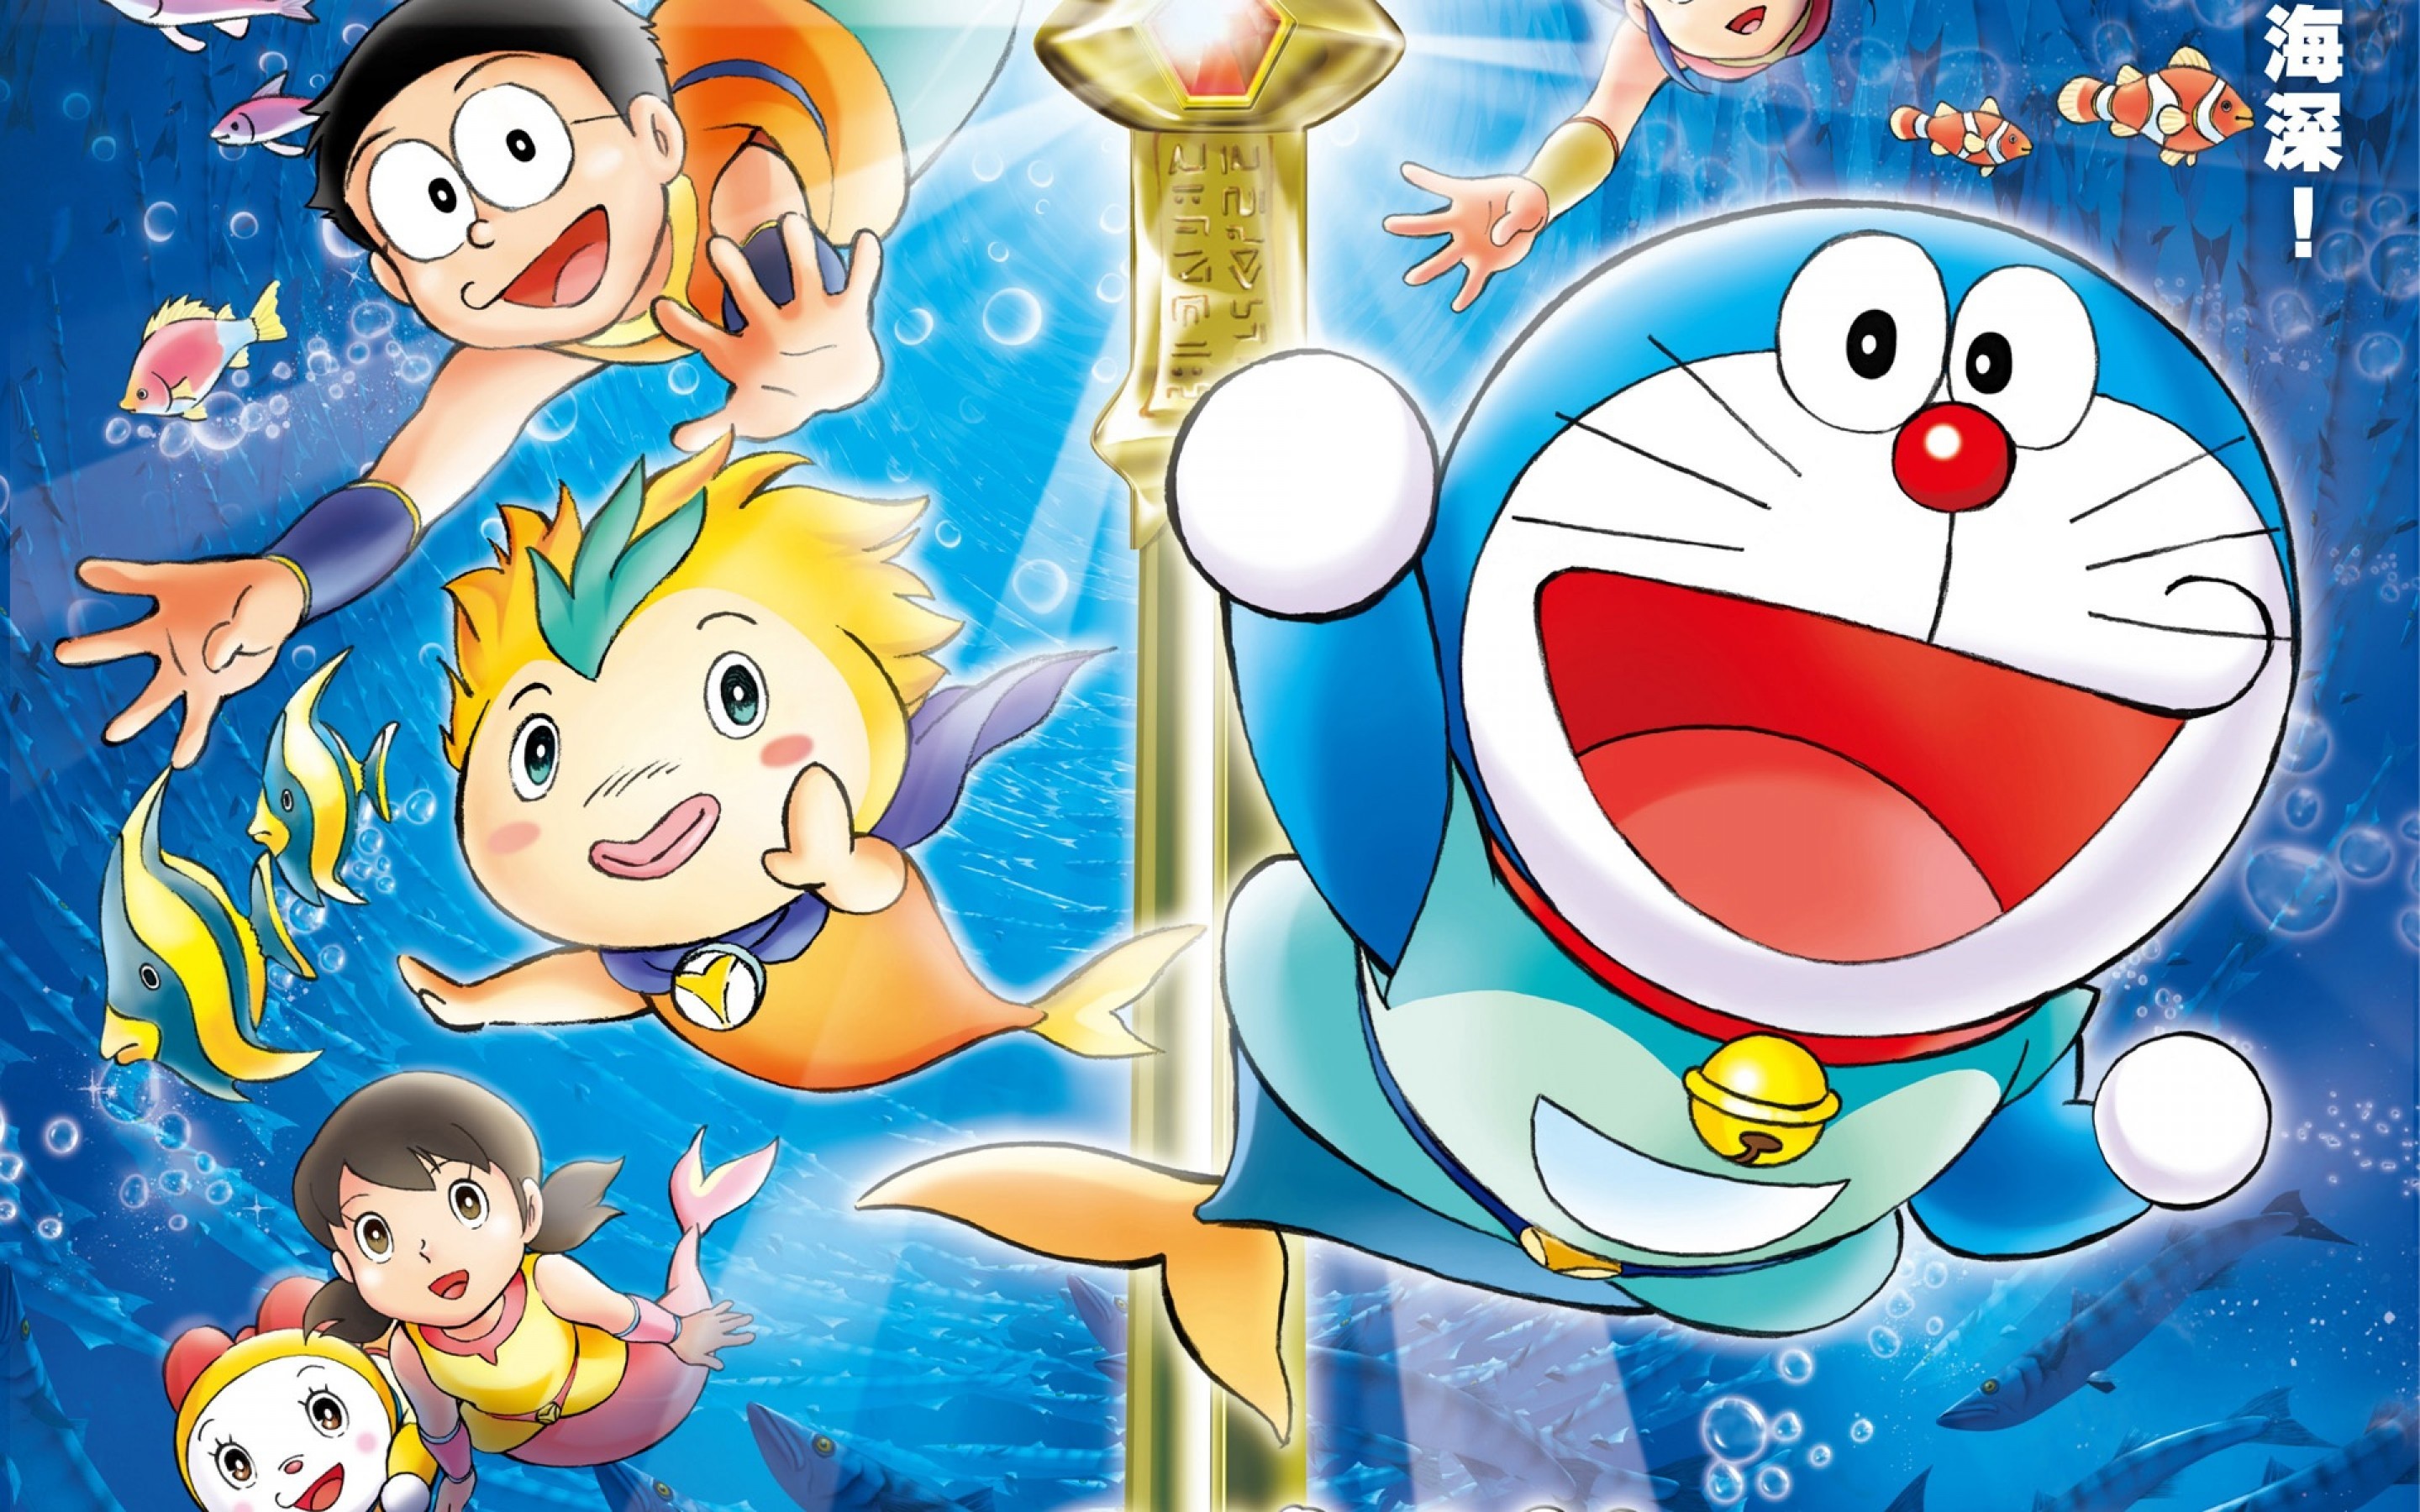 Hình nền Doraemon và bạn bè 2018 sẽ khiến bạn thích thú! Những hình ảnh đầy màu sắc và tươi vui của nhóm bạn Doraemon sẽ giúp bạn tăng cường tinh thần vui vẻ và tạo ra không gian giải trí tuyệt vời trên điện thoại của mình.